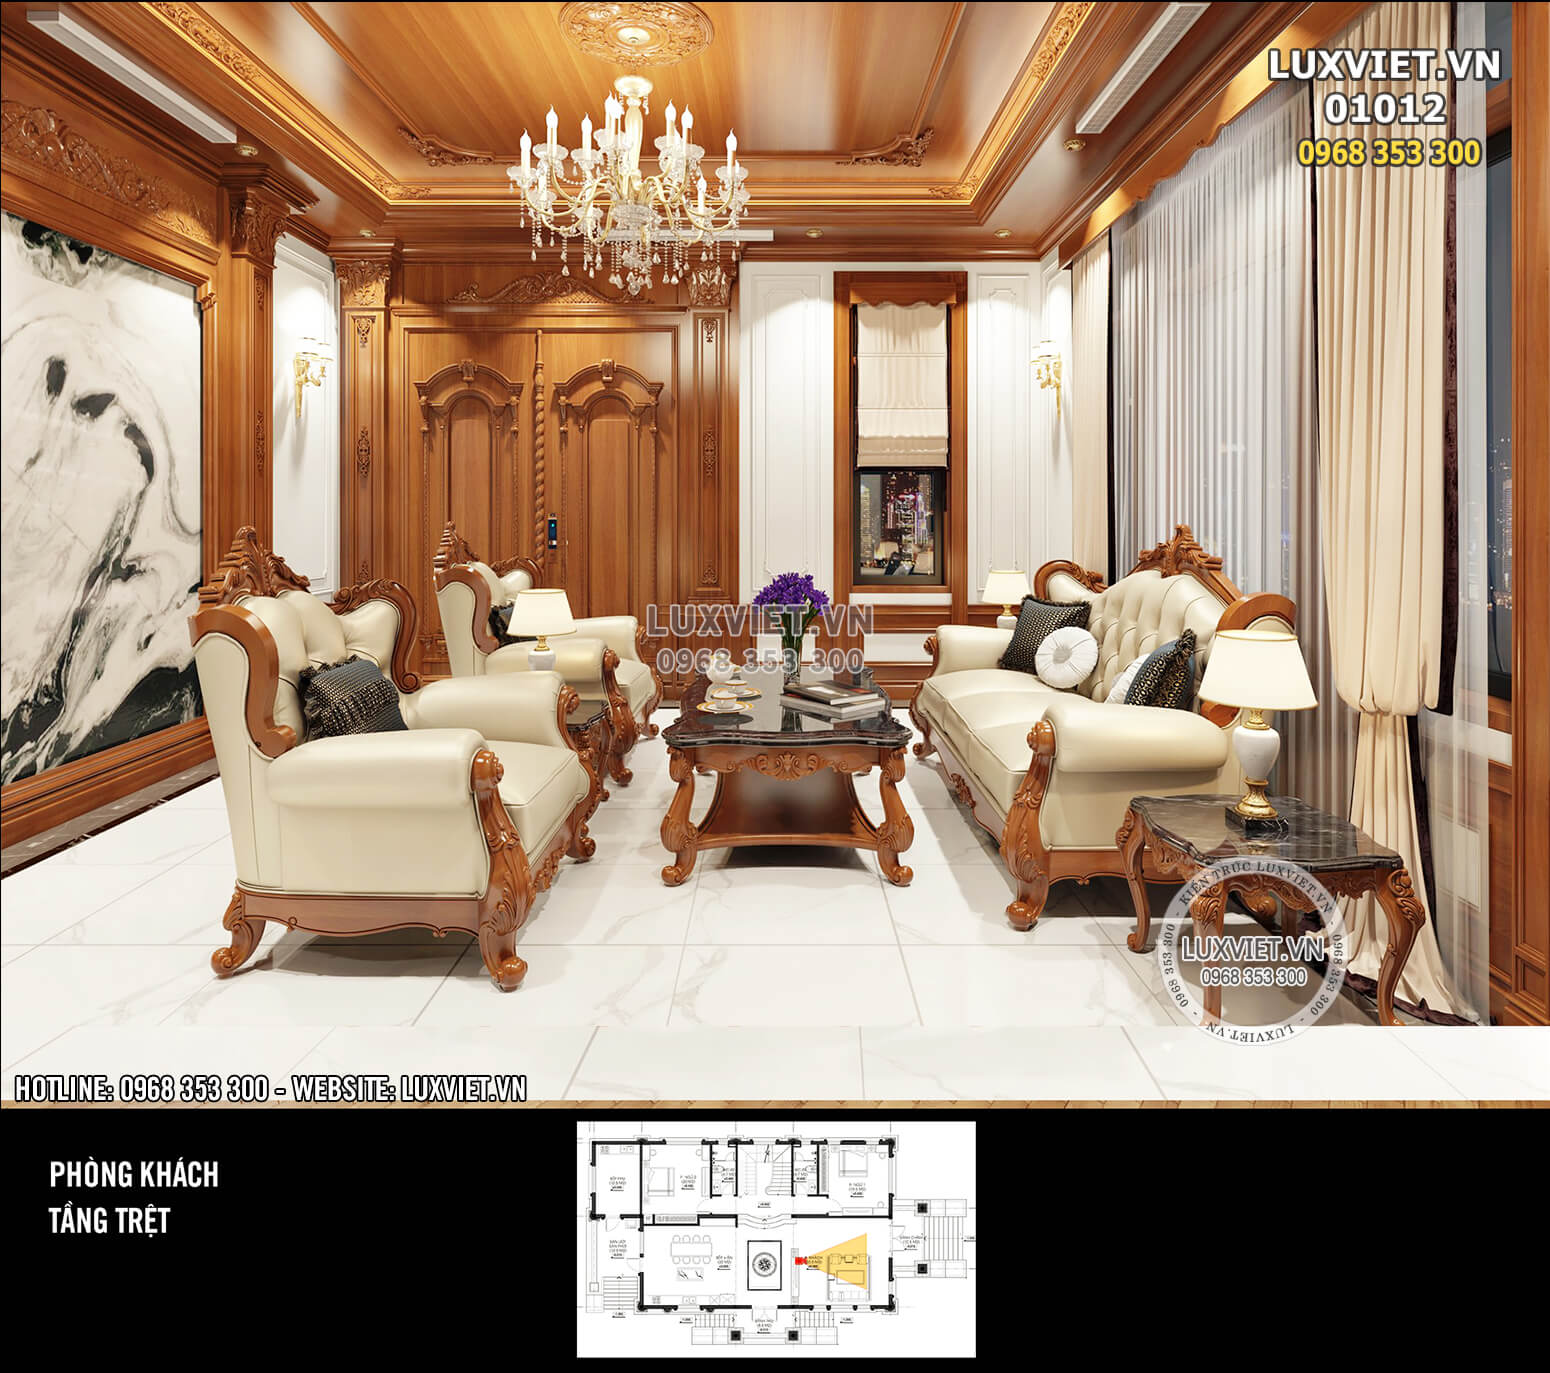 Hình ảnh: Sự kết hợp hoàn hảo giữa các nguyên vật liệu tạo nên không gian phòng khách đẹp hoàn mỹ